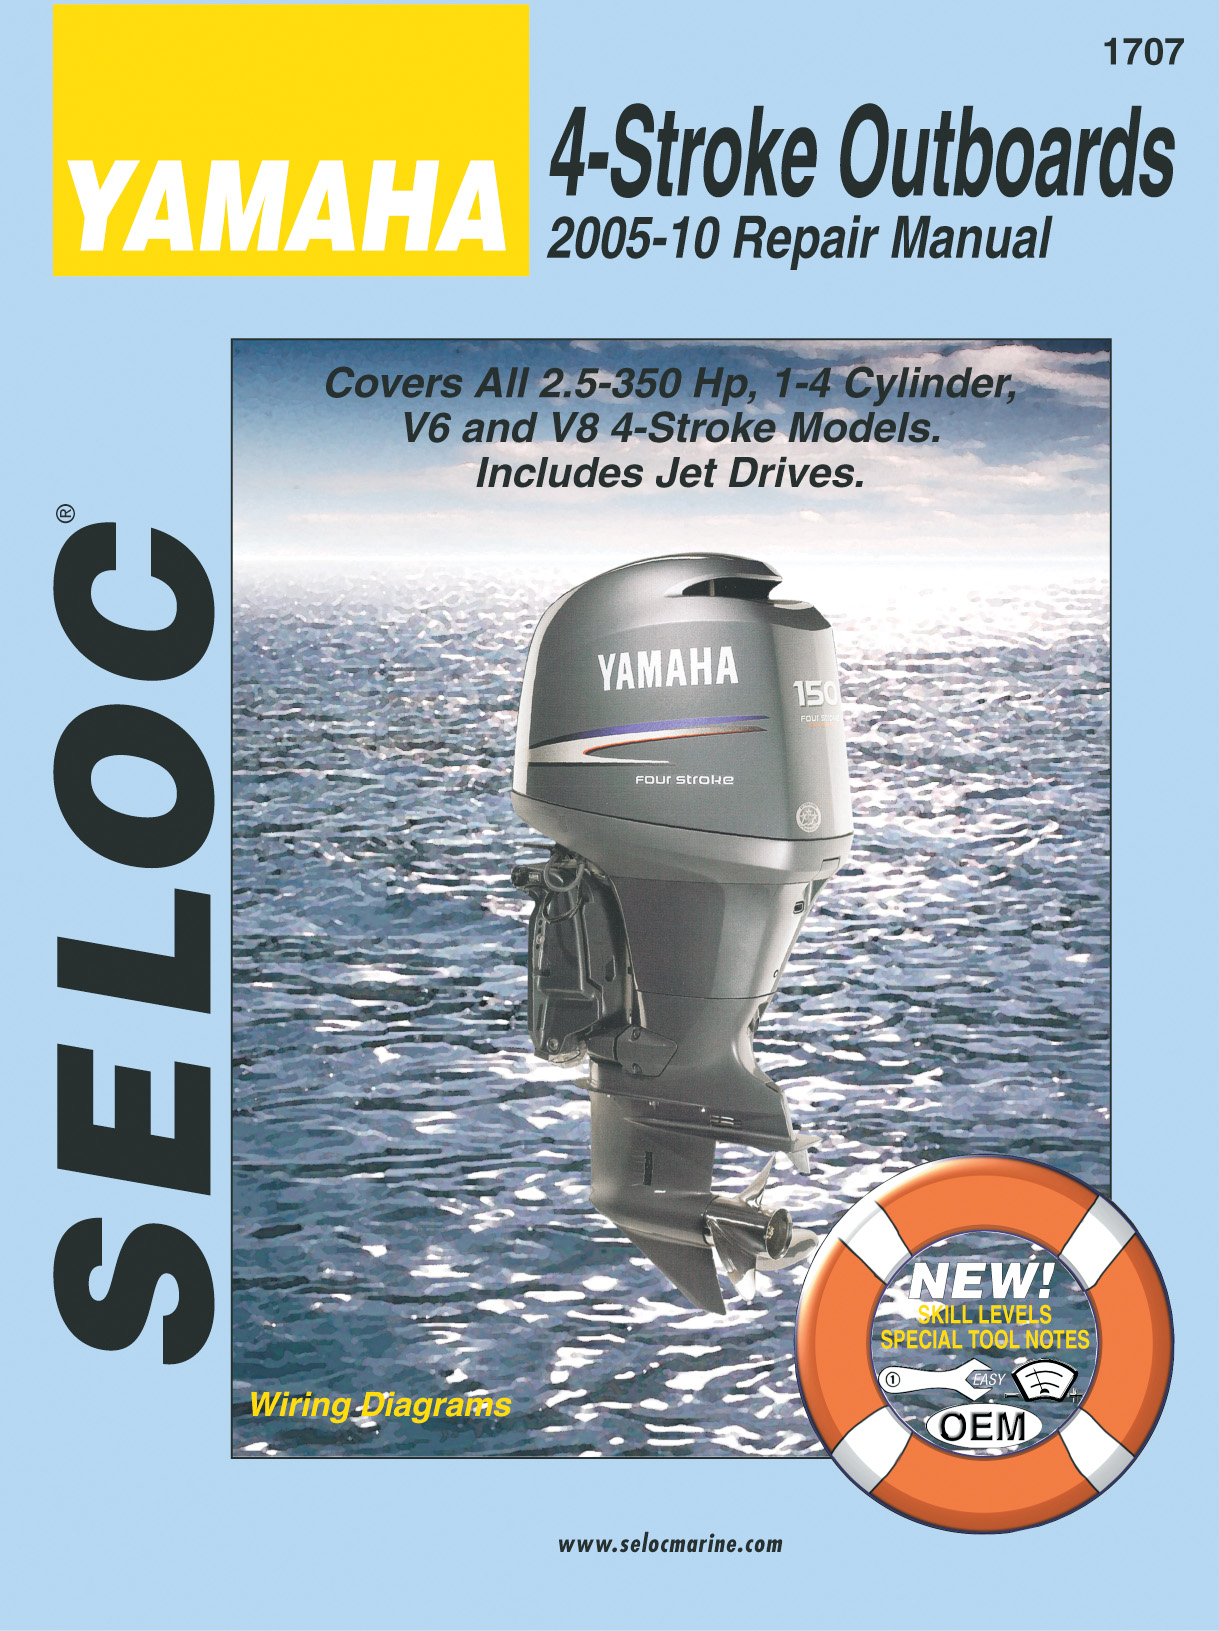 Suzuki gs150r workshop manual